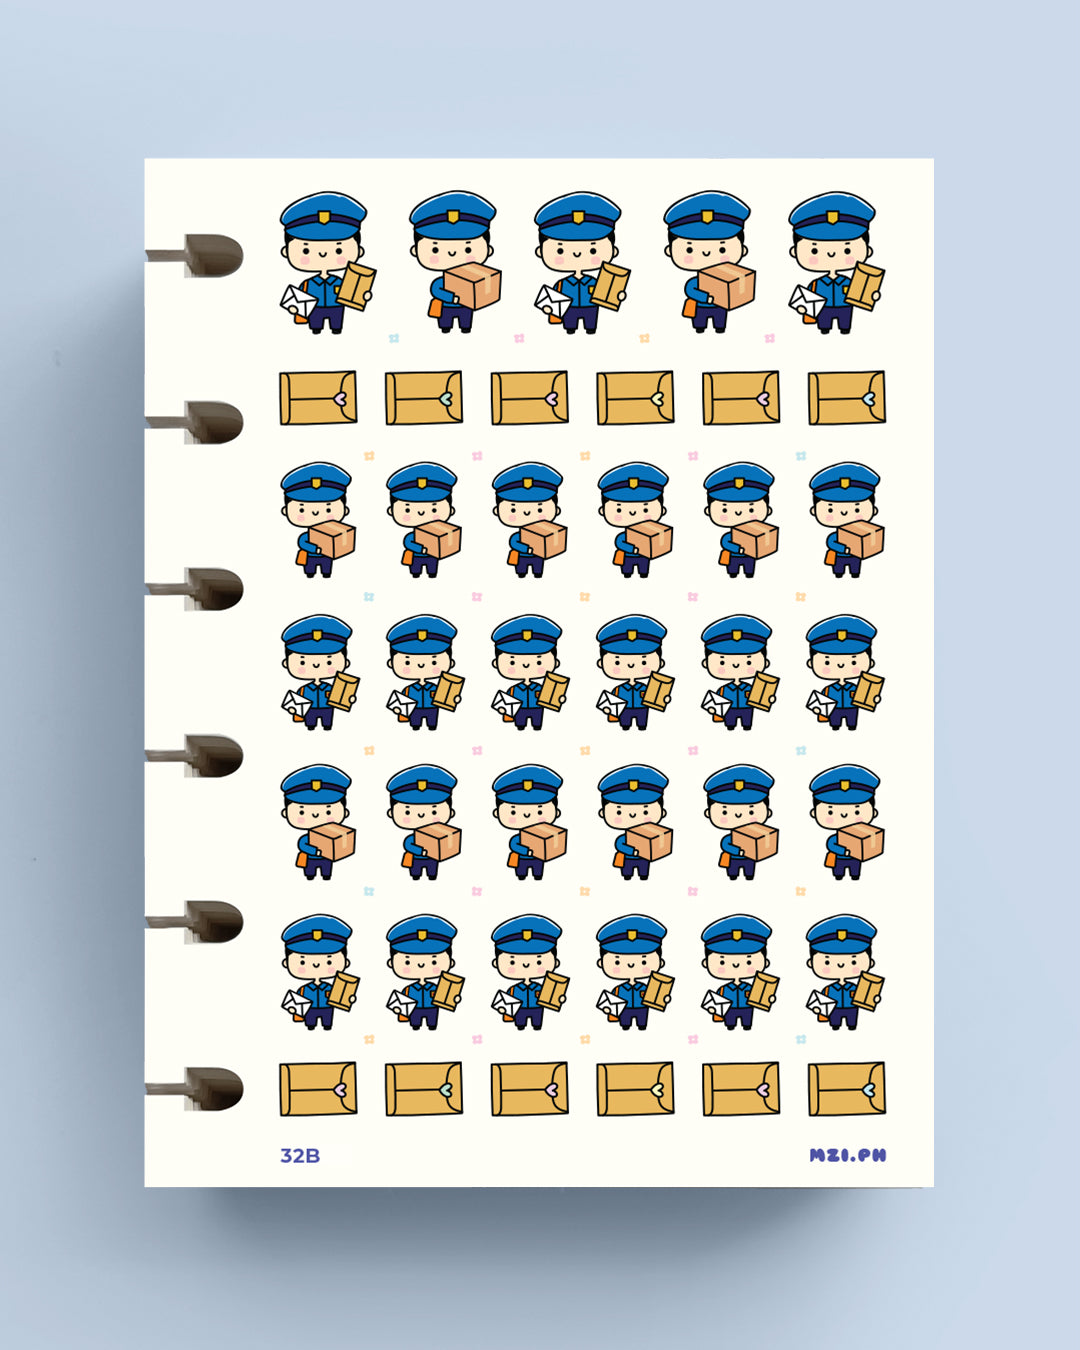 Mailman Blue Uniform Planner Stickers